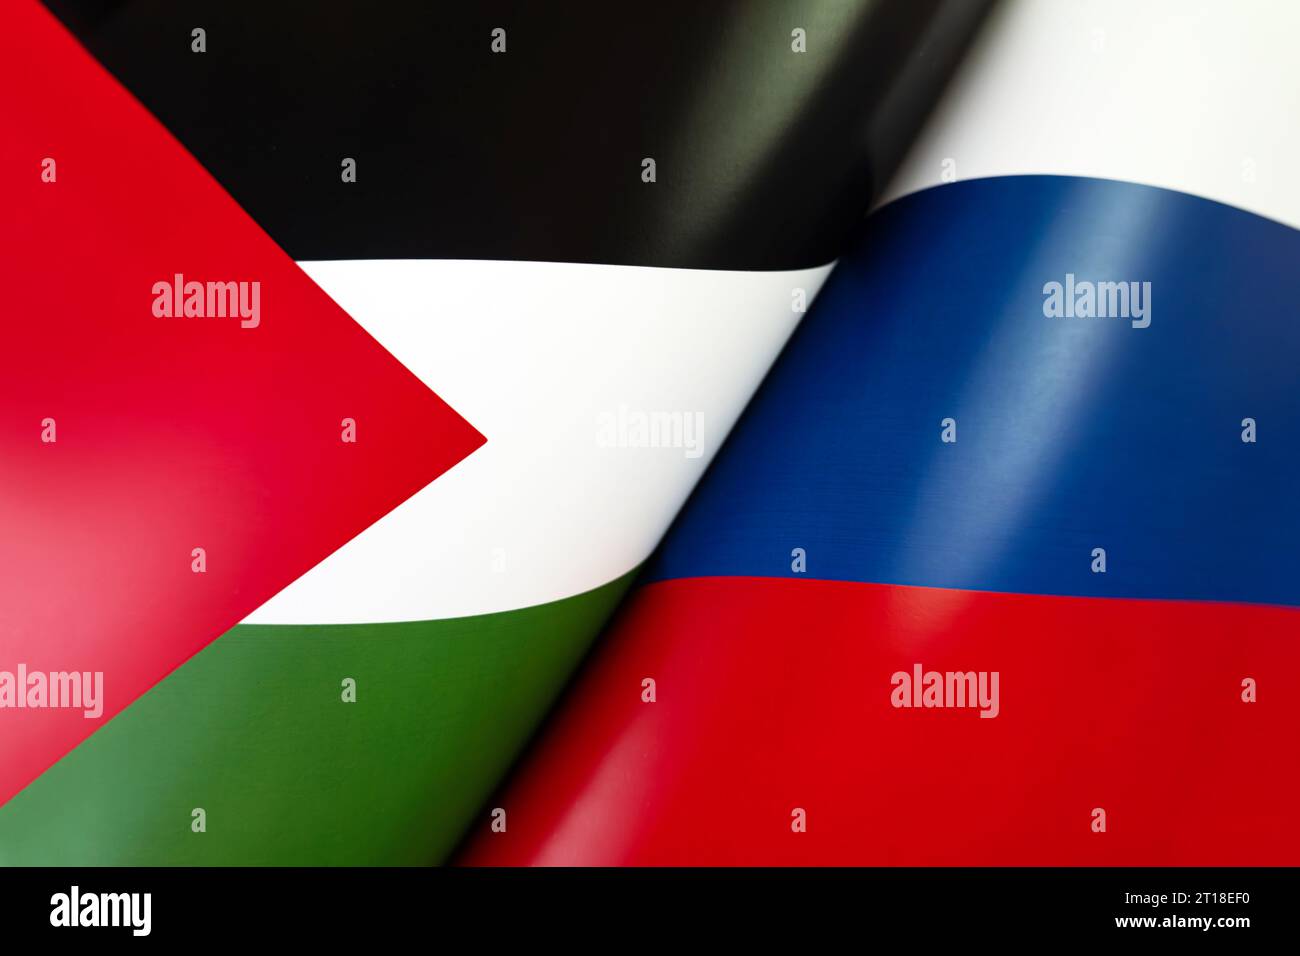 Sfondo delle bandiere della federazione russa, palestina. Il concetto di interazione o controazione tra i due paesi. rel. Internazionale Foto Stock